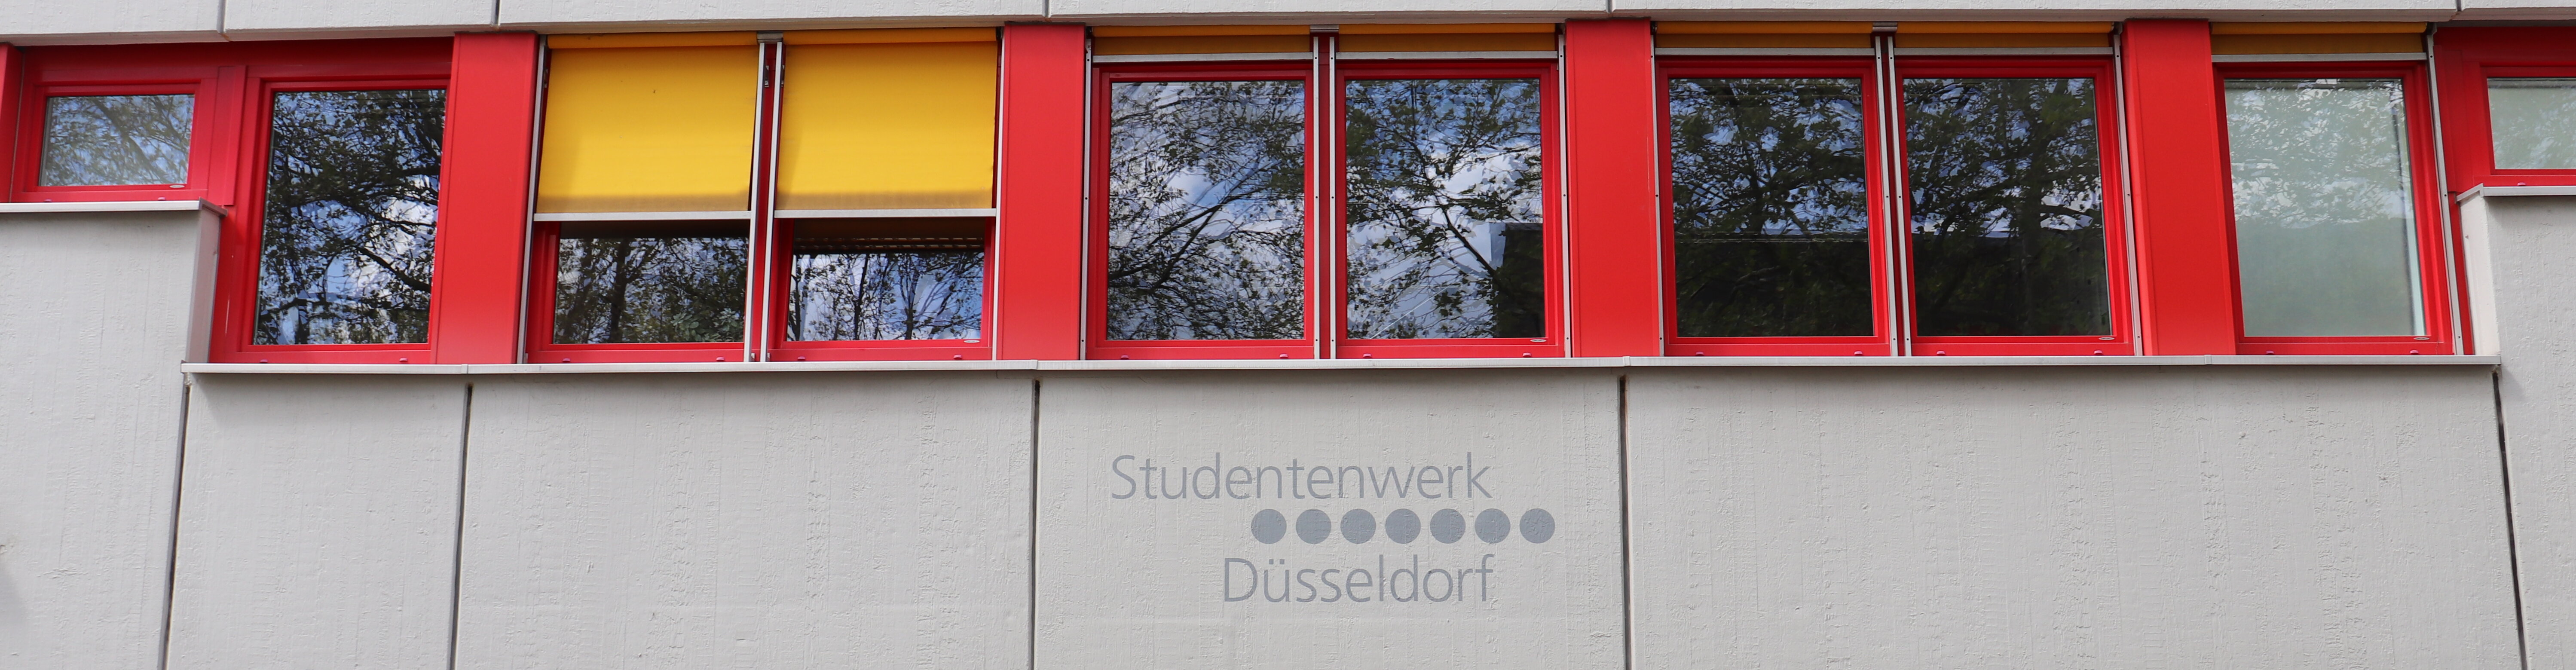 Man sieht eine Hauswand und den Schriftzug "Studentenwerk Düsseldorf". 